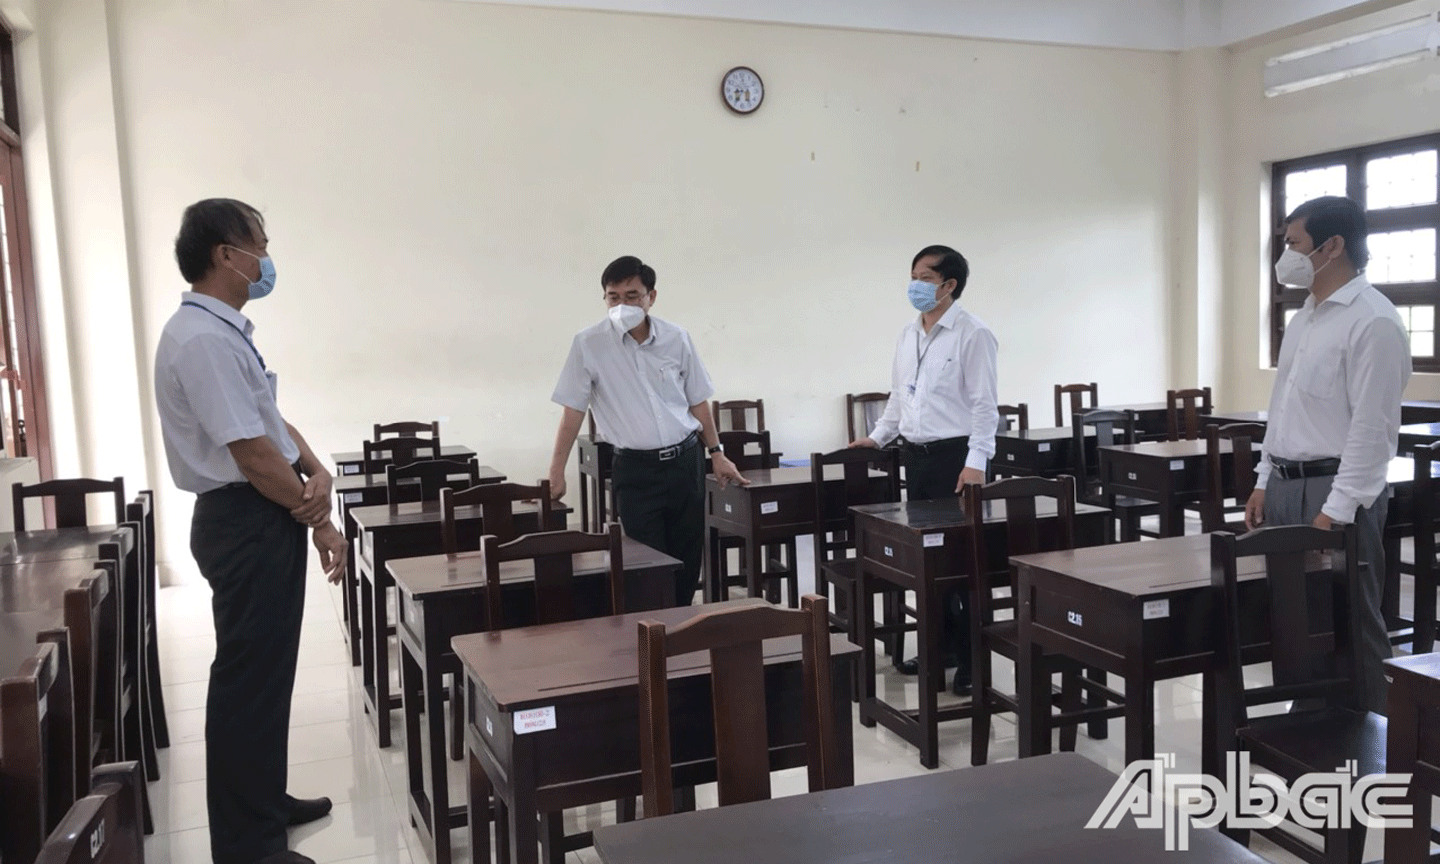 Đồng chí Nguyễn Văn Mười đề nghị các phòng thi đợt này cần thực hiện giãn cách tối đa. 